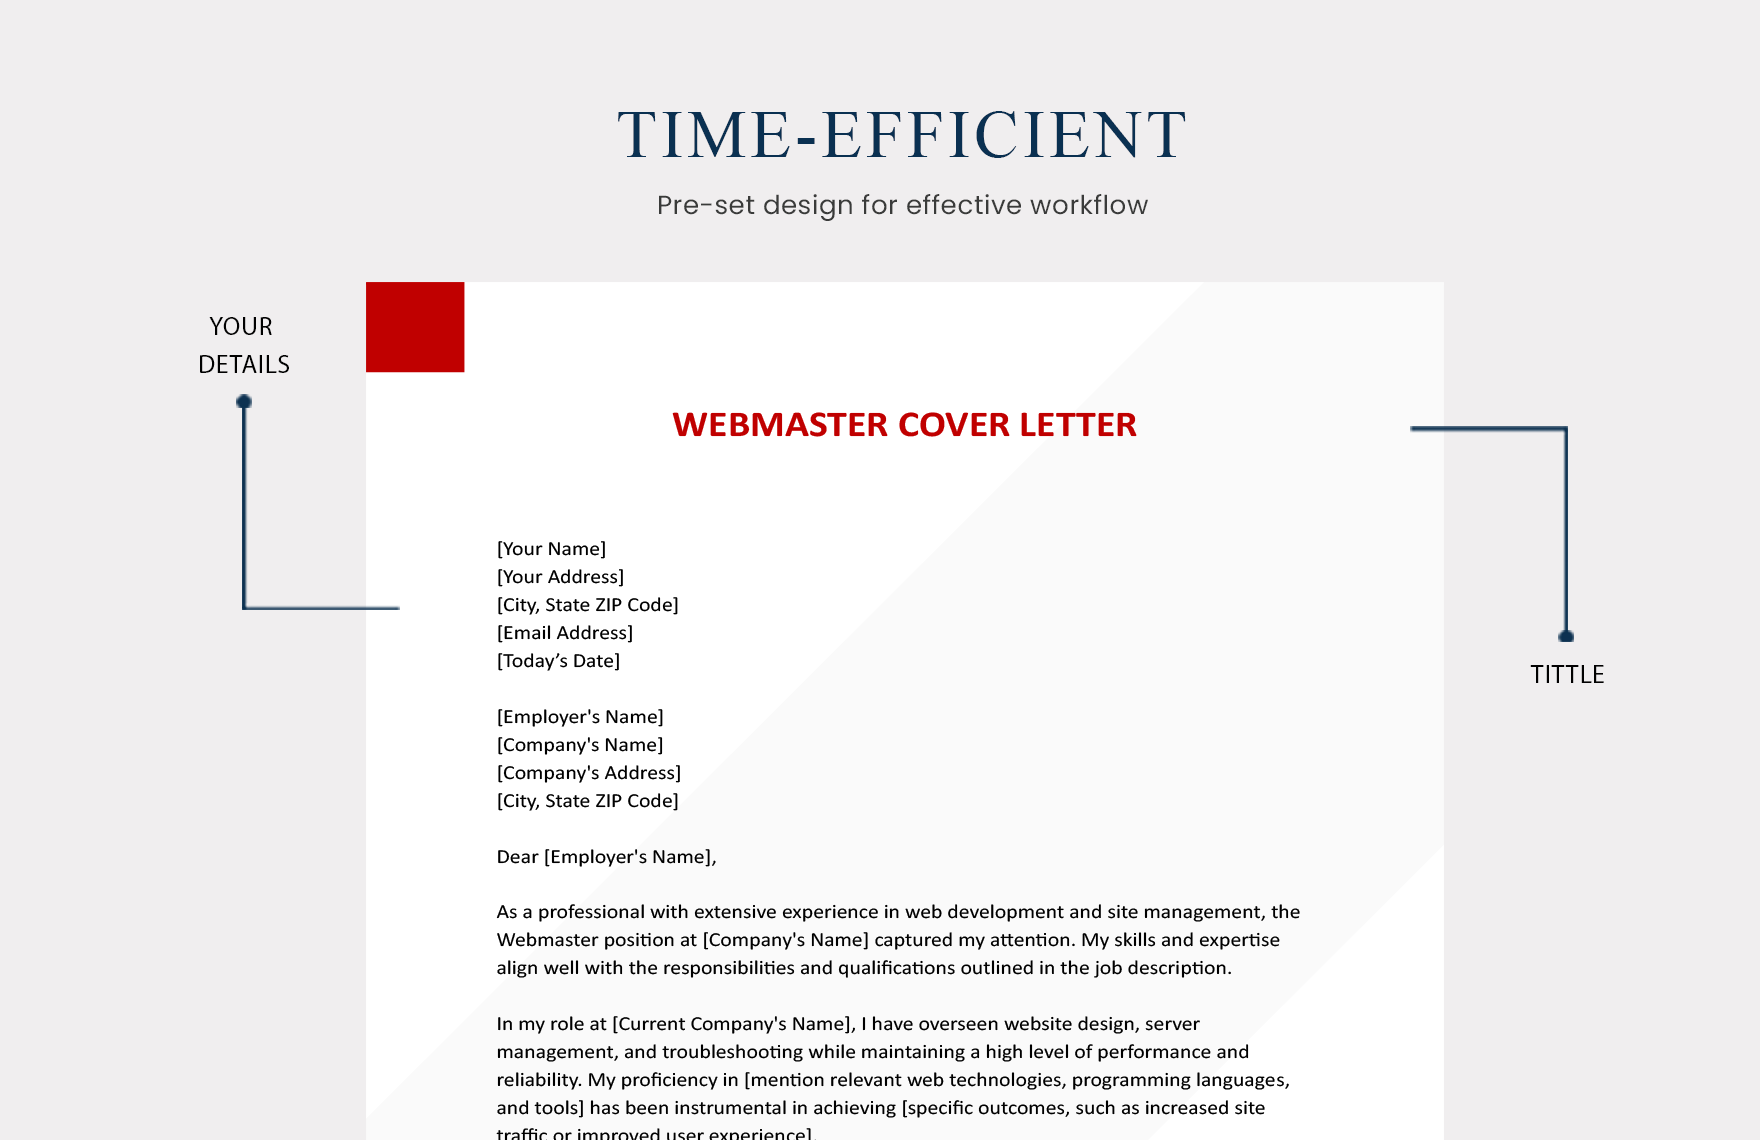 Webmaster Cover Letter